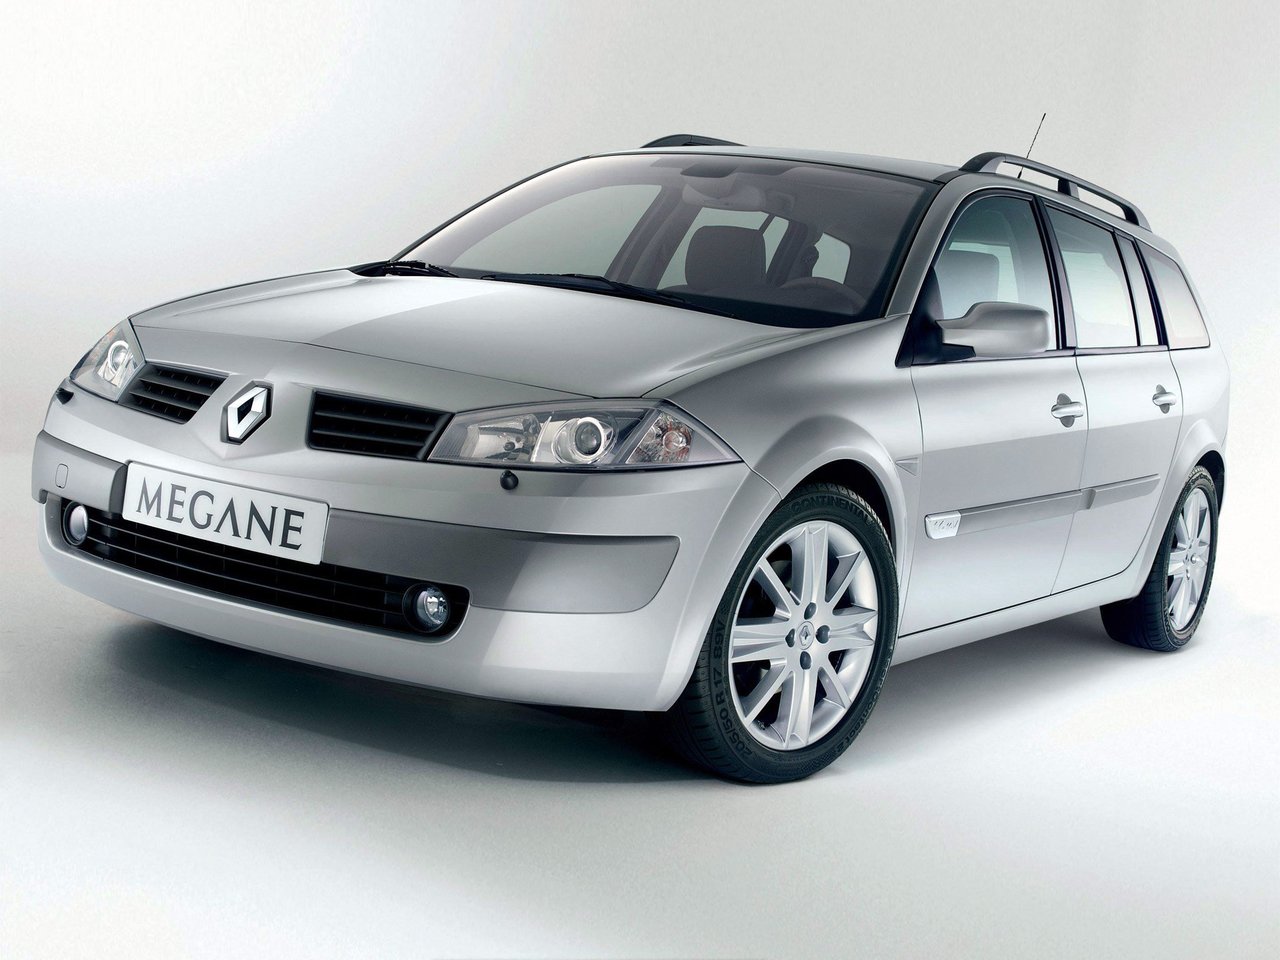 Расход газа пяти комплектаций универсала пять дверей Renault Megane. Разница стоимости заправки газом и бензином. Автономный пробег до и после установки ГБО.